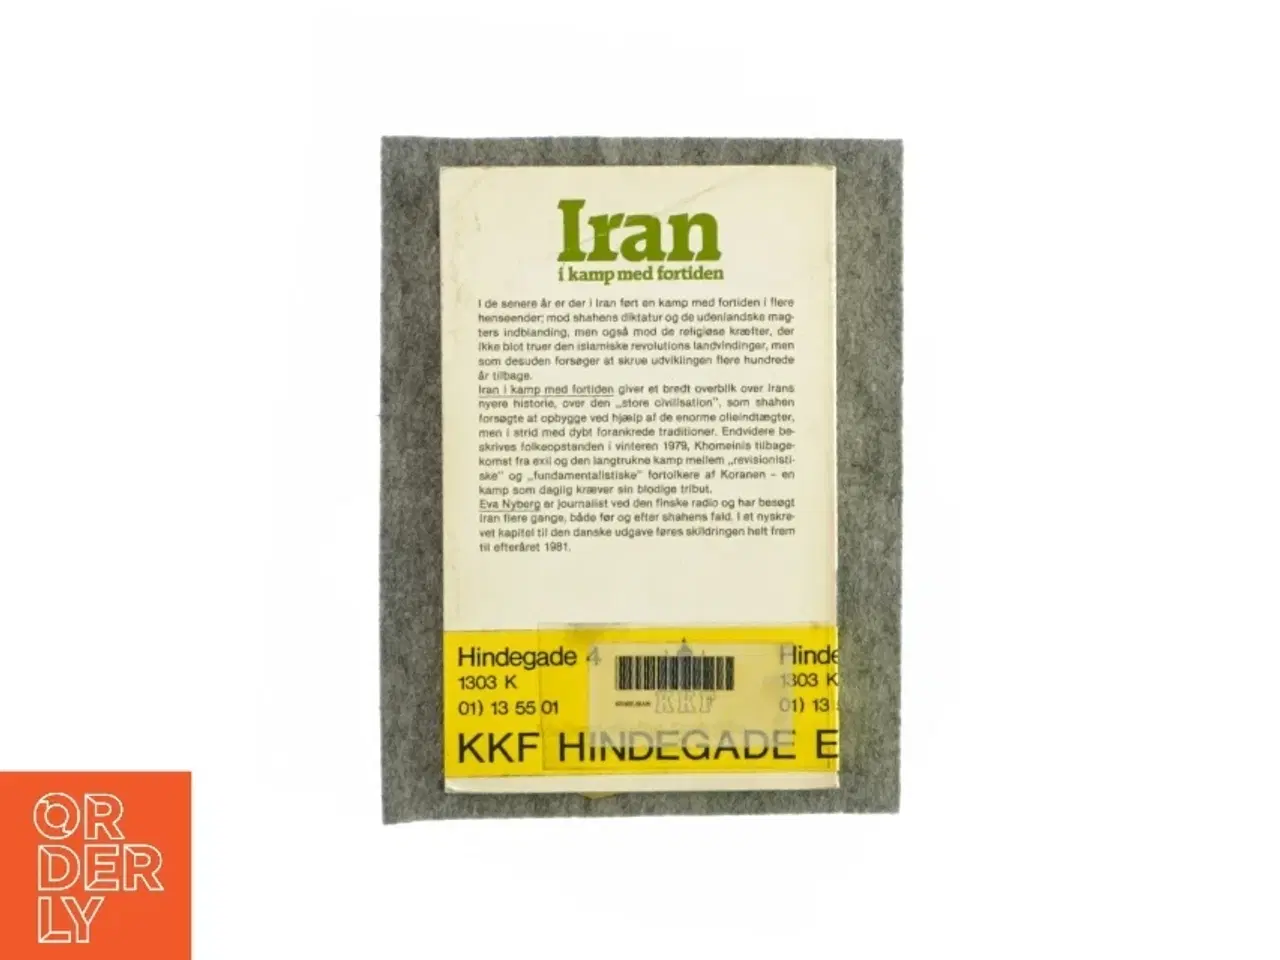 Billede 2 - Iran i kamp med fortiden af Eva Nyberg (Bog)